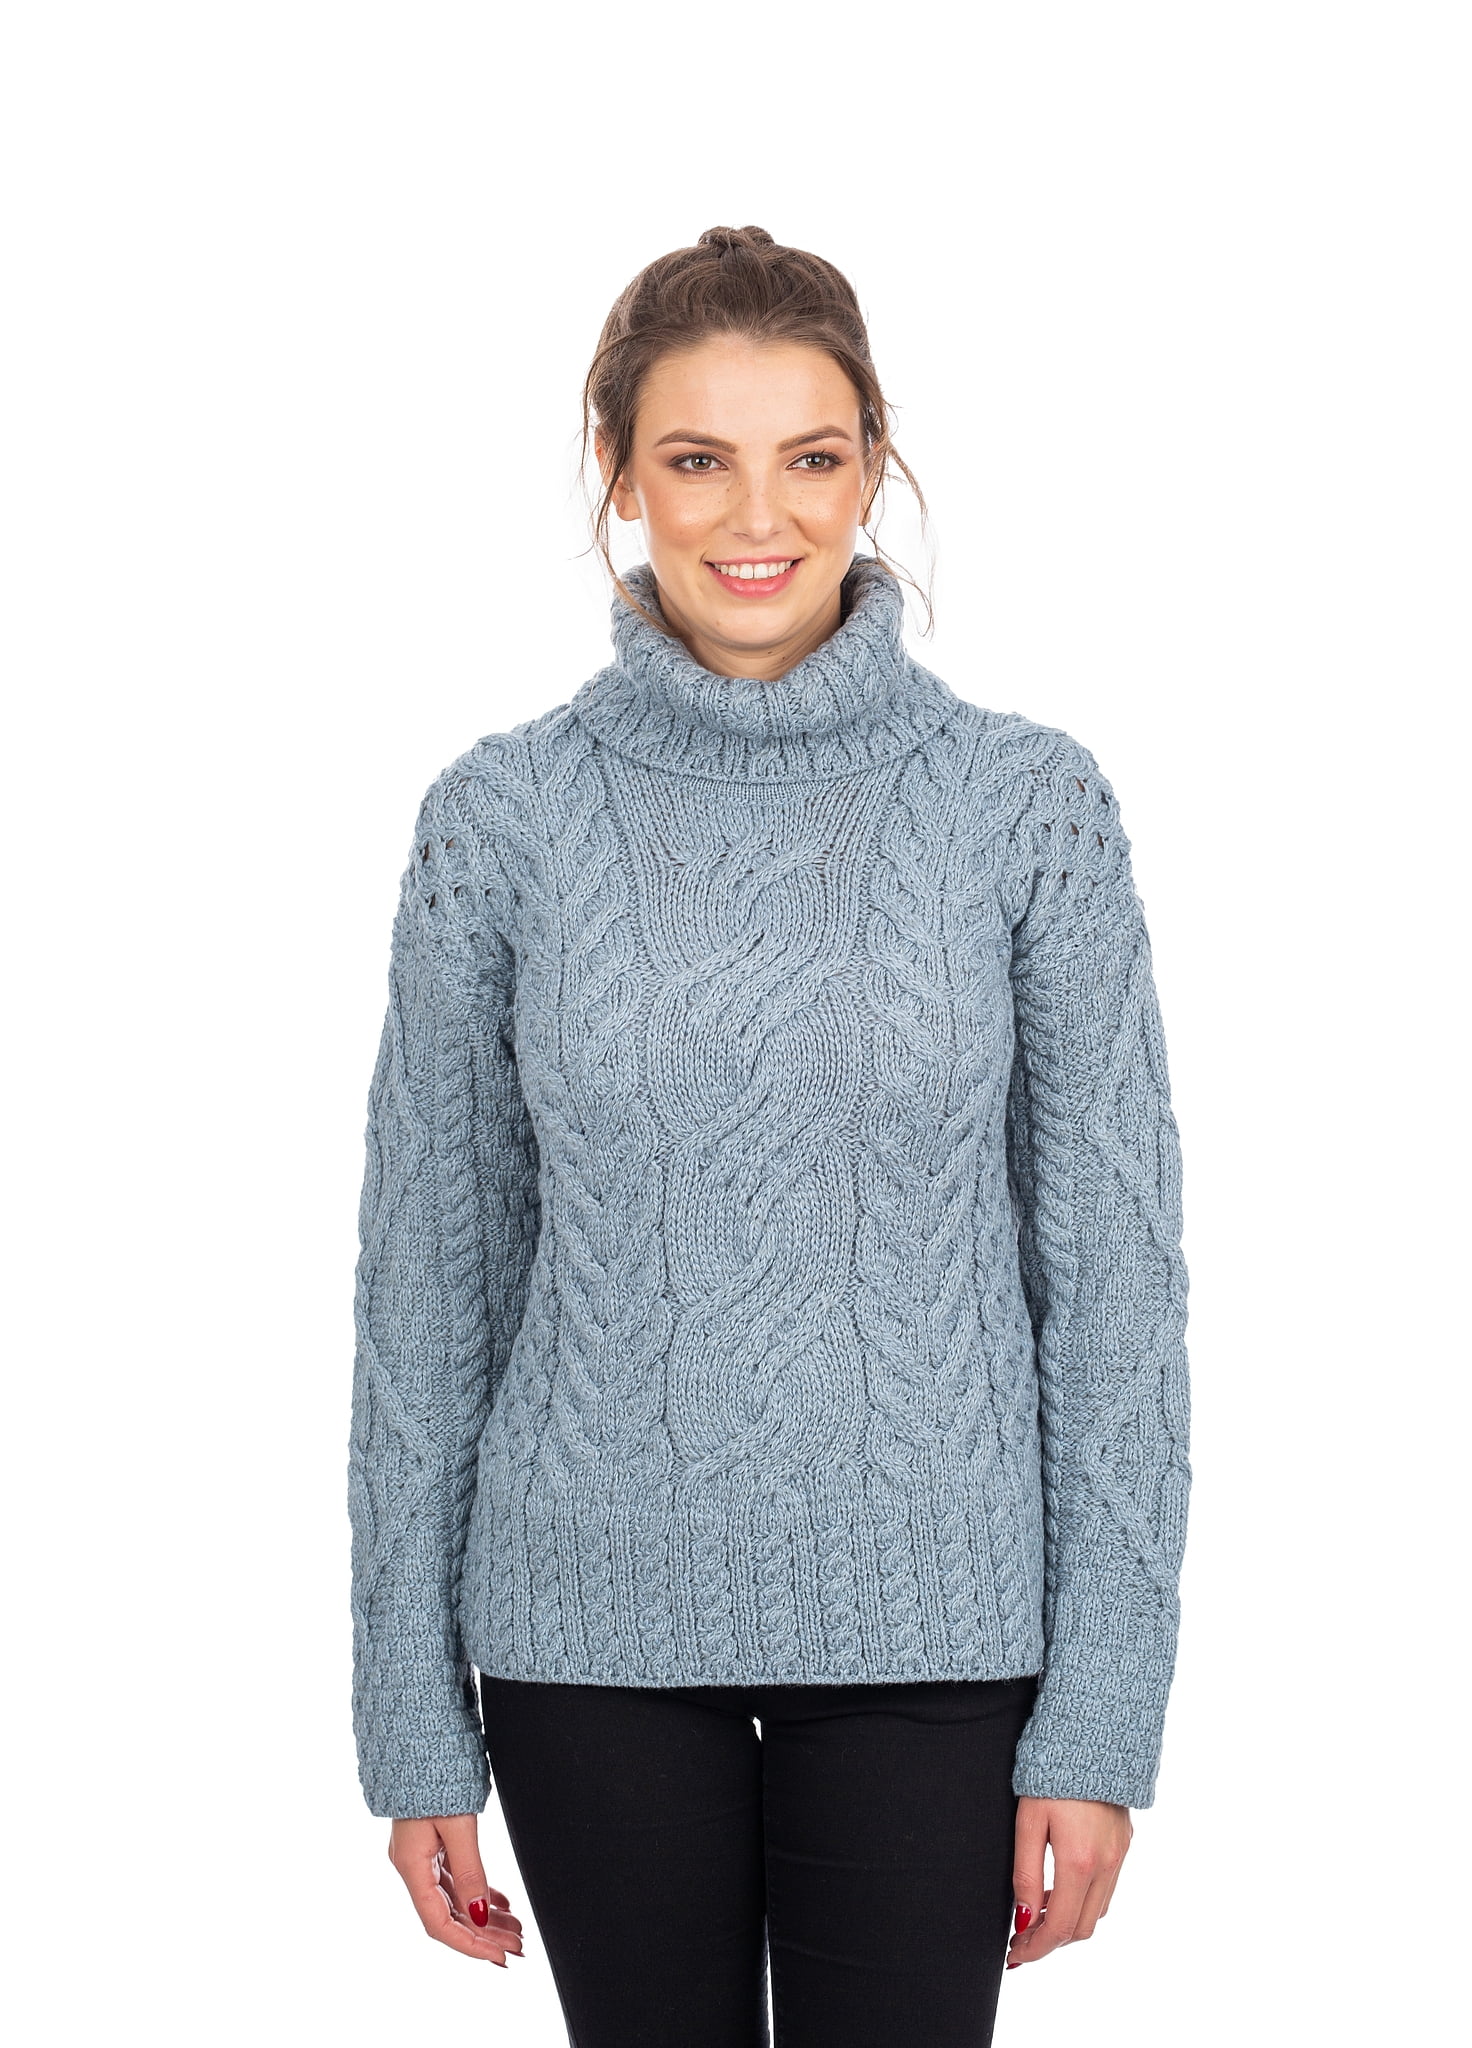 SAOL - SAOL Irish Turtleneck Sweater for Women 100% Merino Wool ...